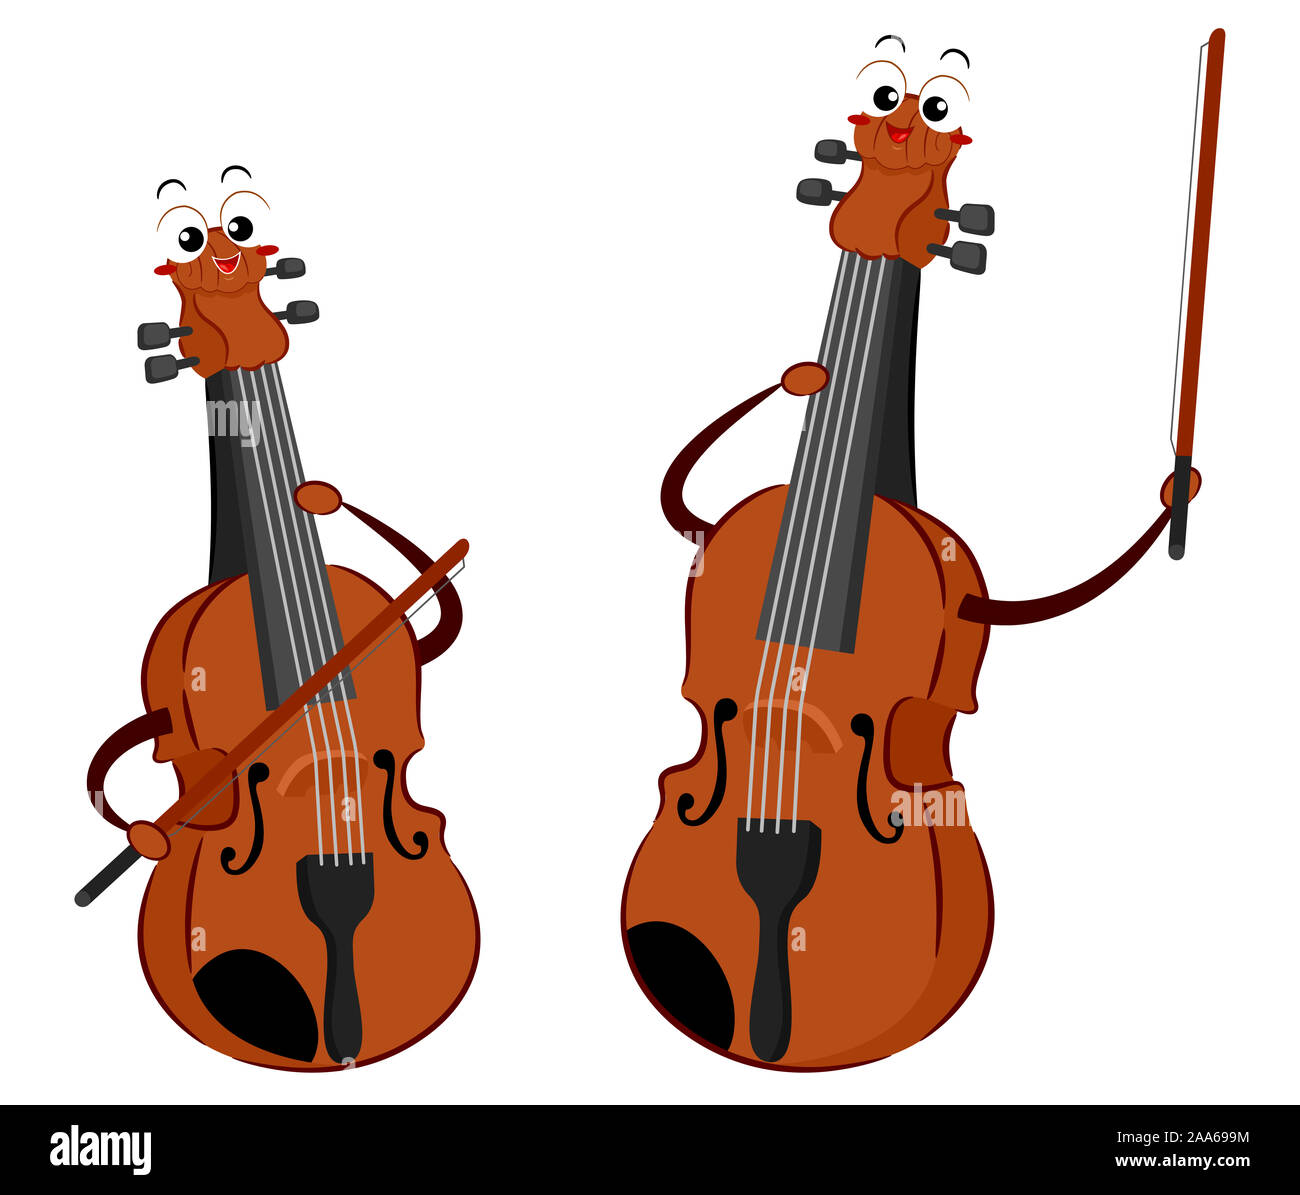 Abbildung einer Geige und einer Bratsche spielen Musik zusammen  Stockfotografie - Alamy